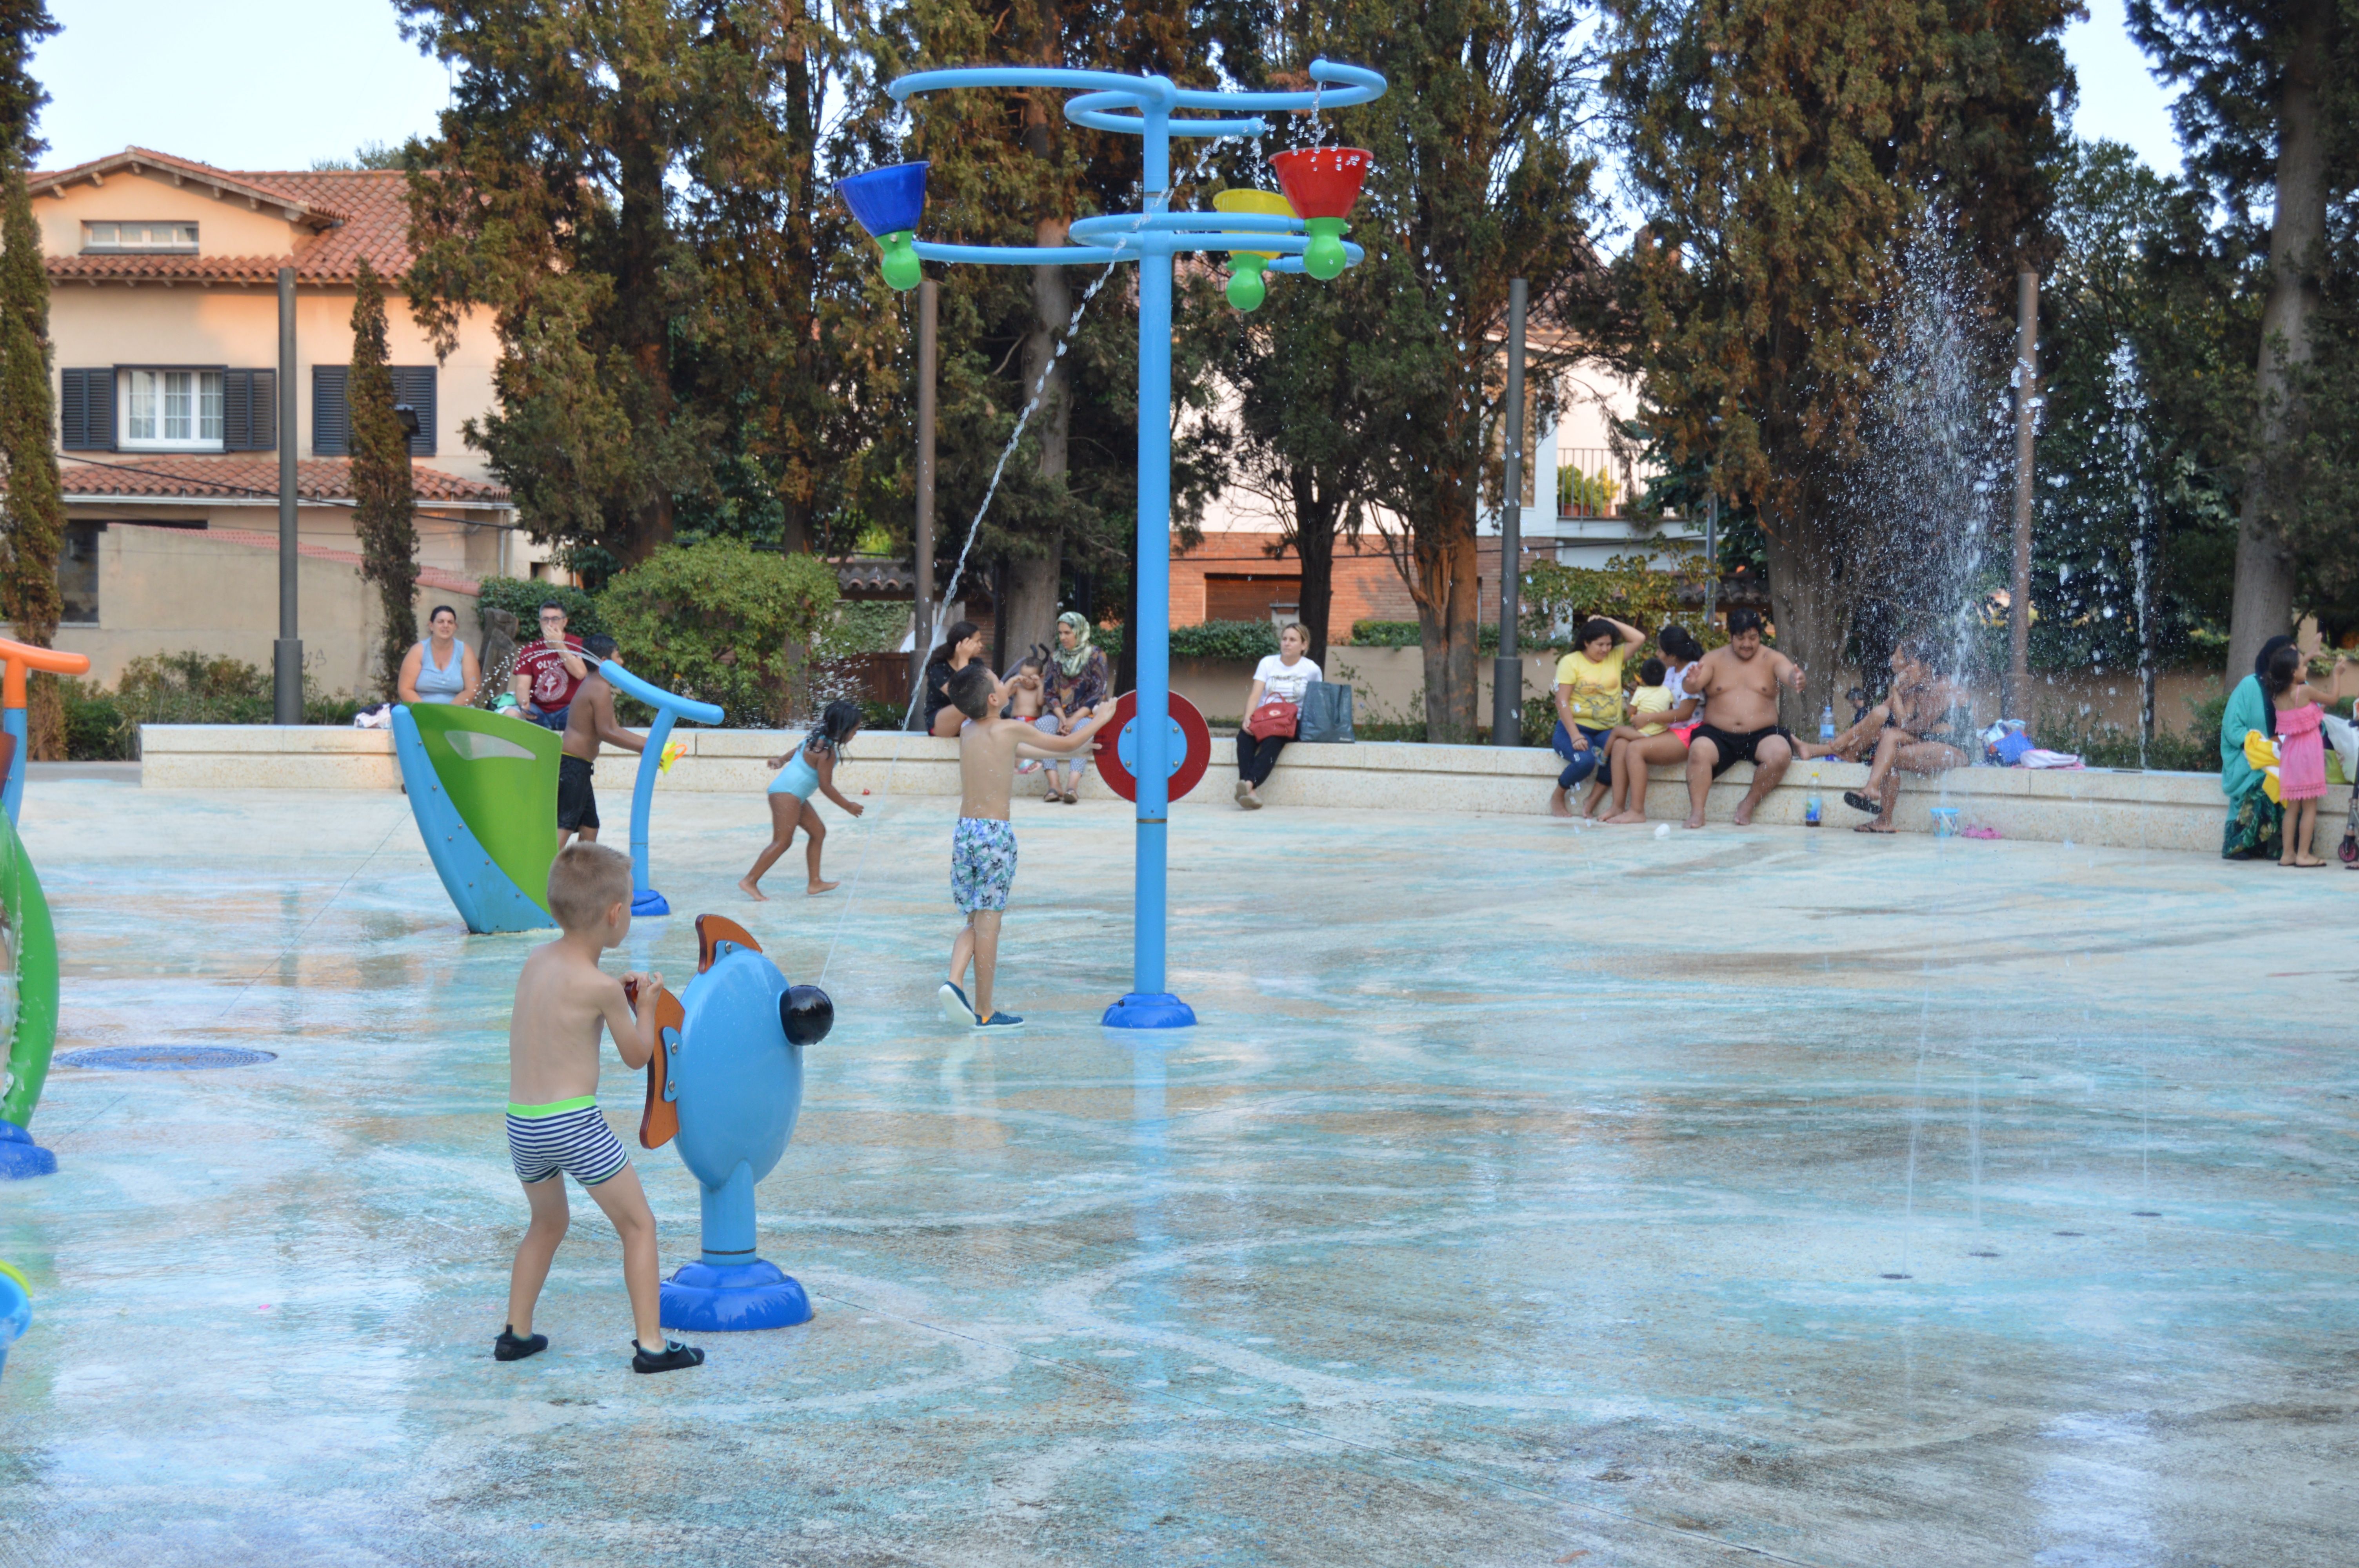 Refrescar-se al parc de Cordelles durant l'onada de calor a Cerdanyola. FOTO: Nora Muñoz Otero